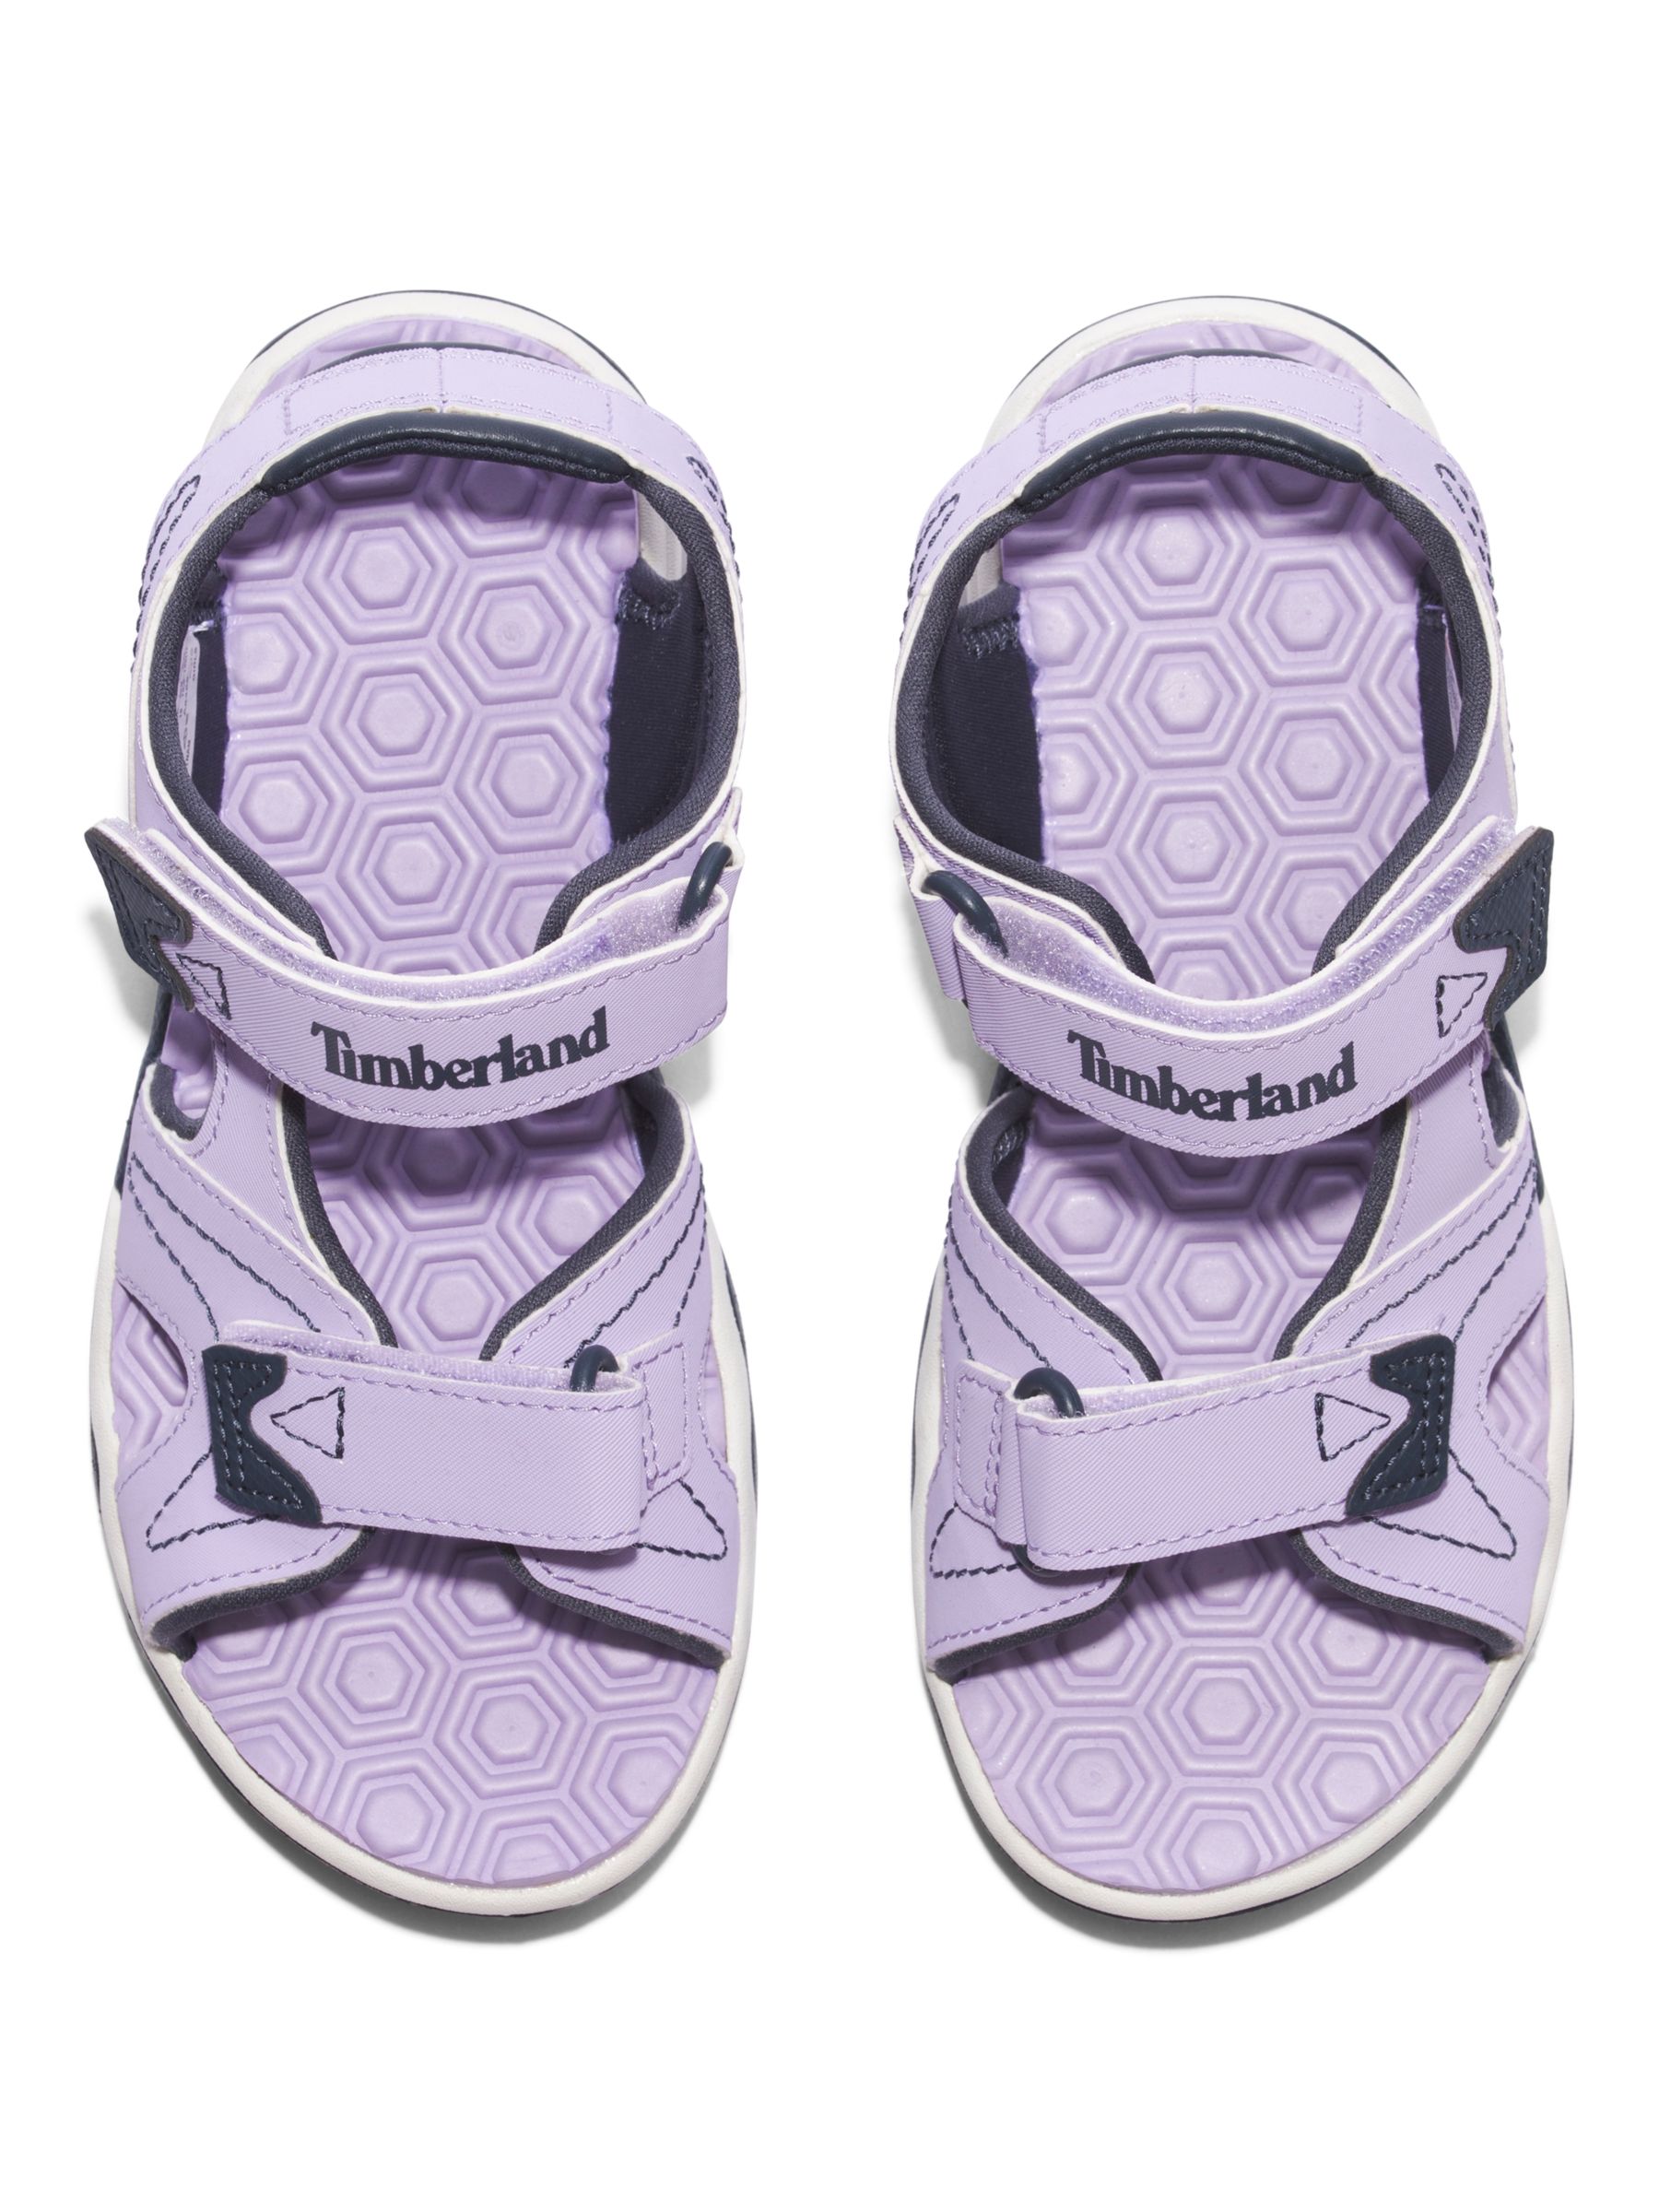 Timberland Kids' Adventure Seeker Sandals, Lilac, 23